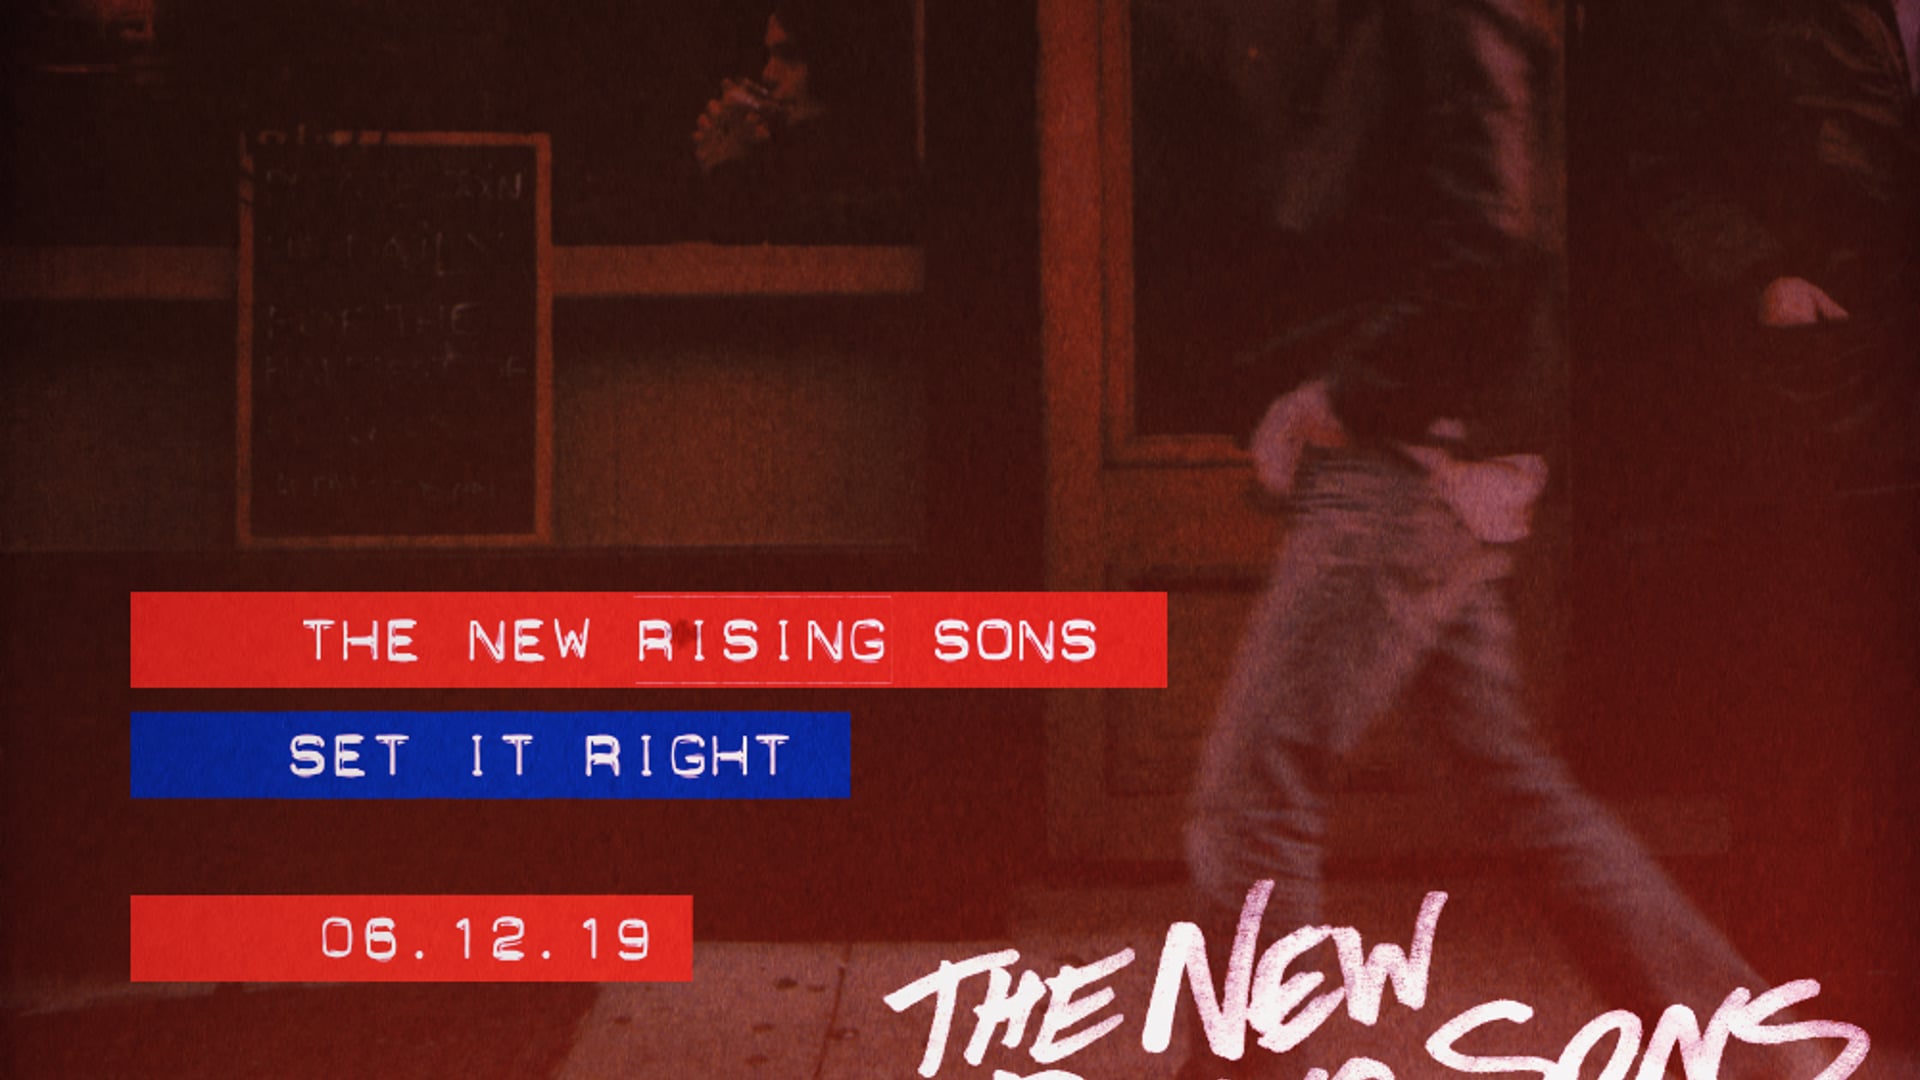 The New Rising Sons Album promo